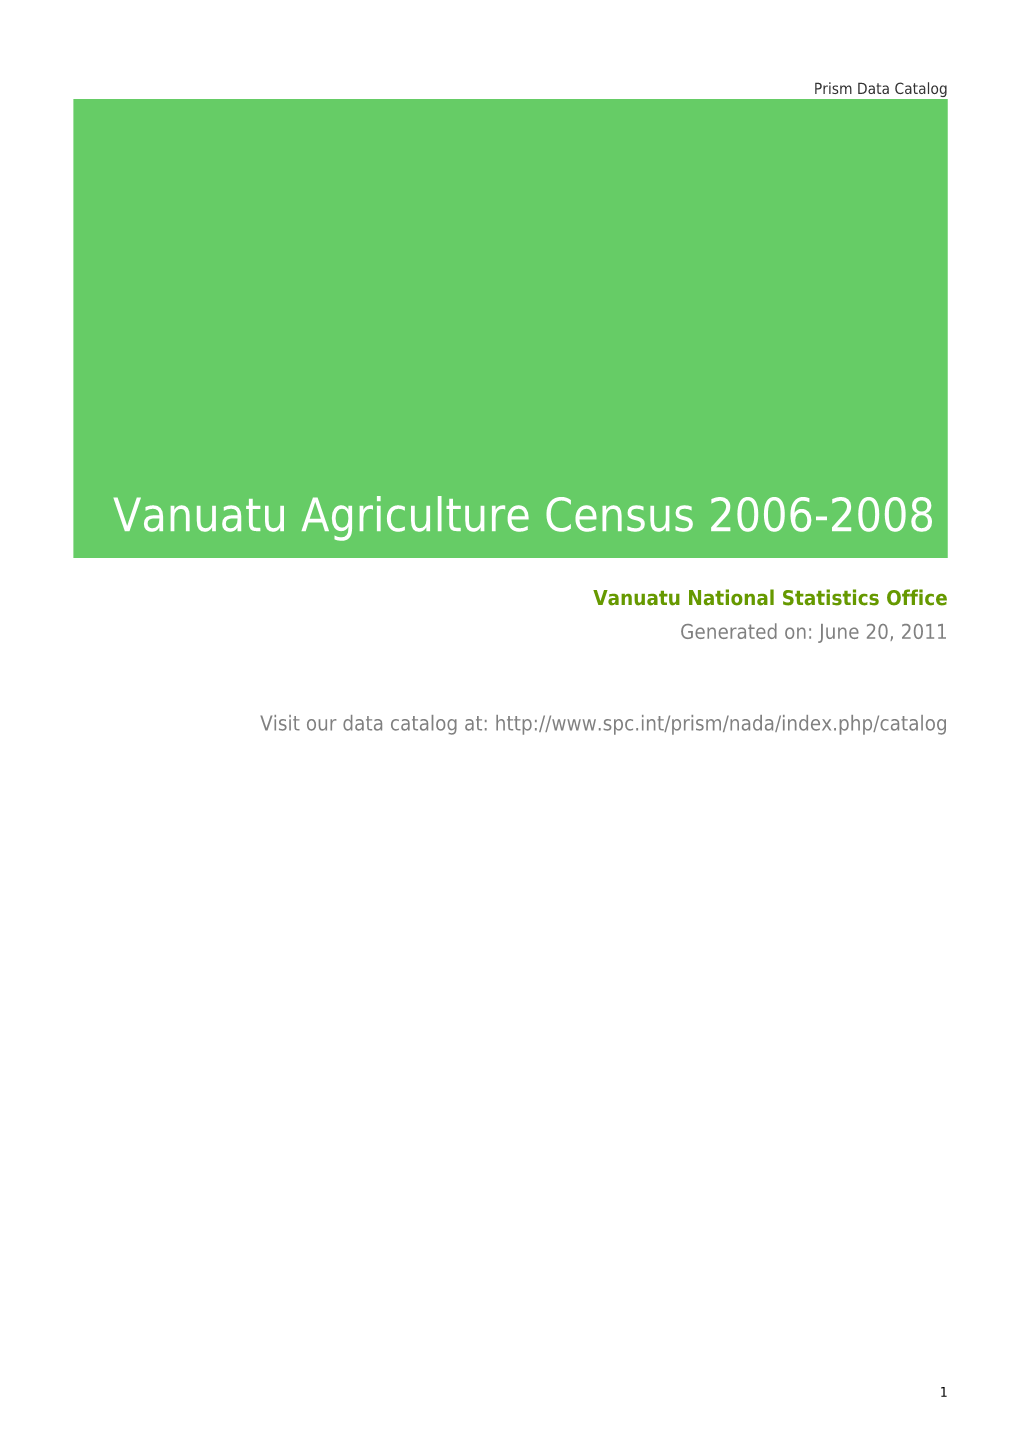 Vanuatu Agriculture Census 2006-2008